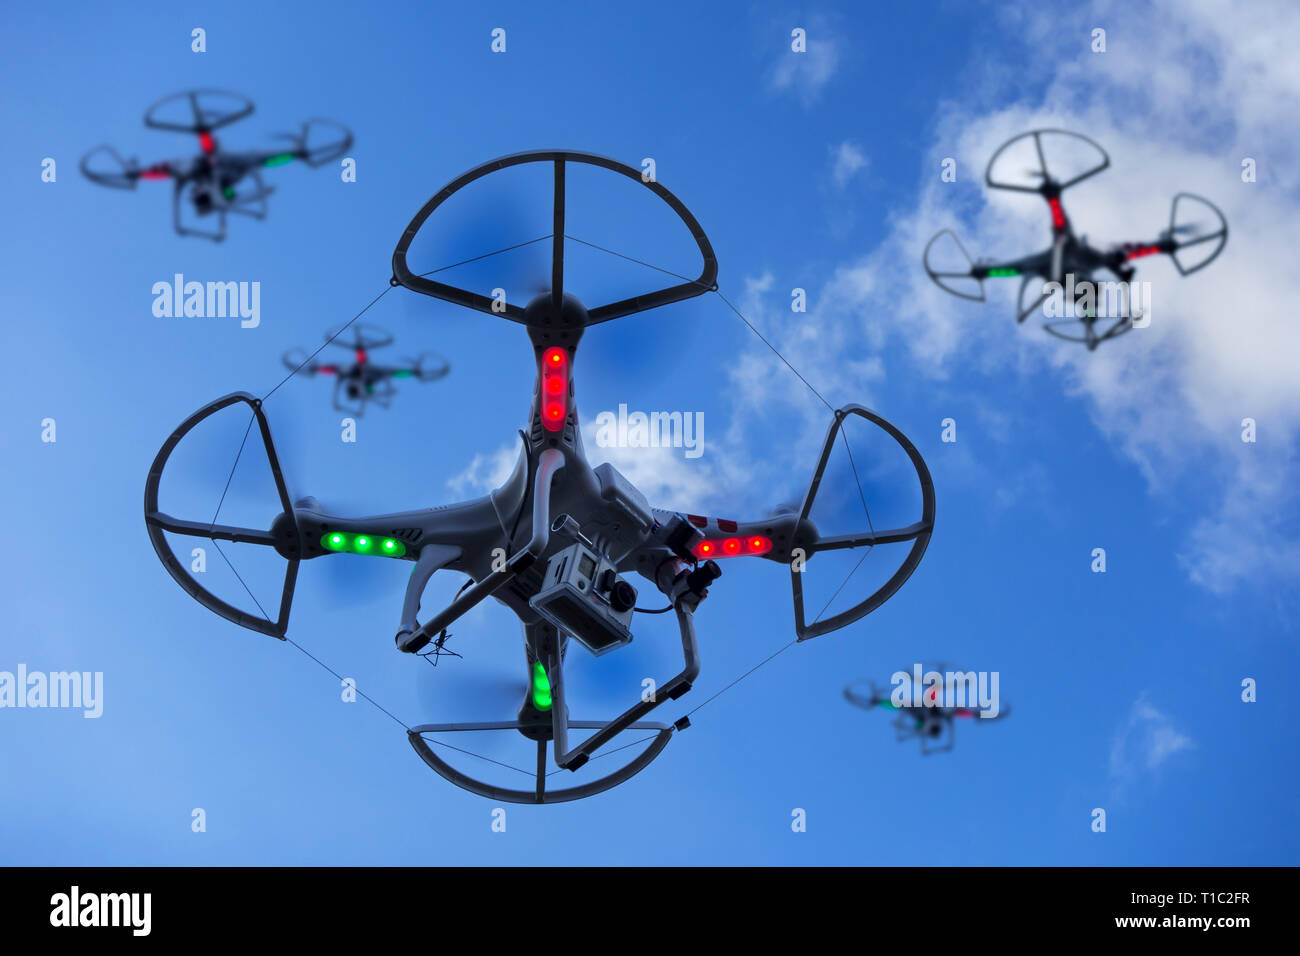 Grupo de miniatura / aviones teledirigidos no tripulados UAV / equipado con cámara en vuelo contra el cielo azul con nubes Foto de stock